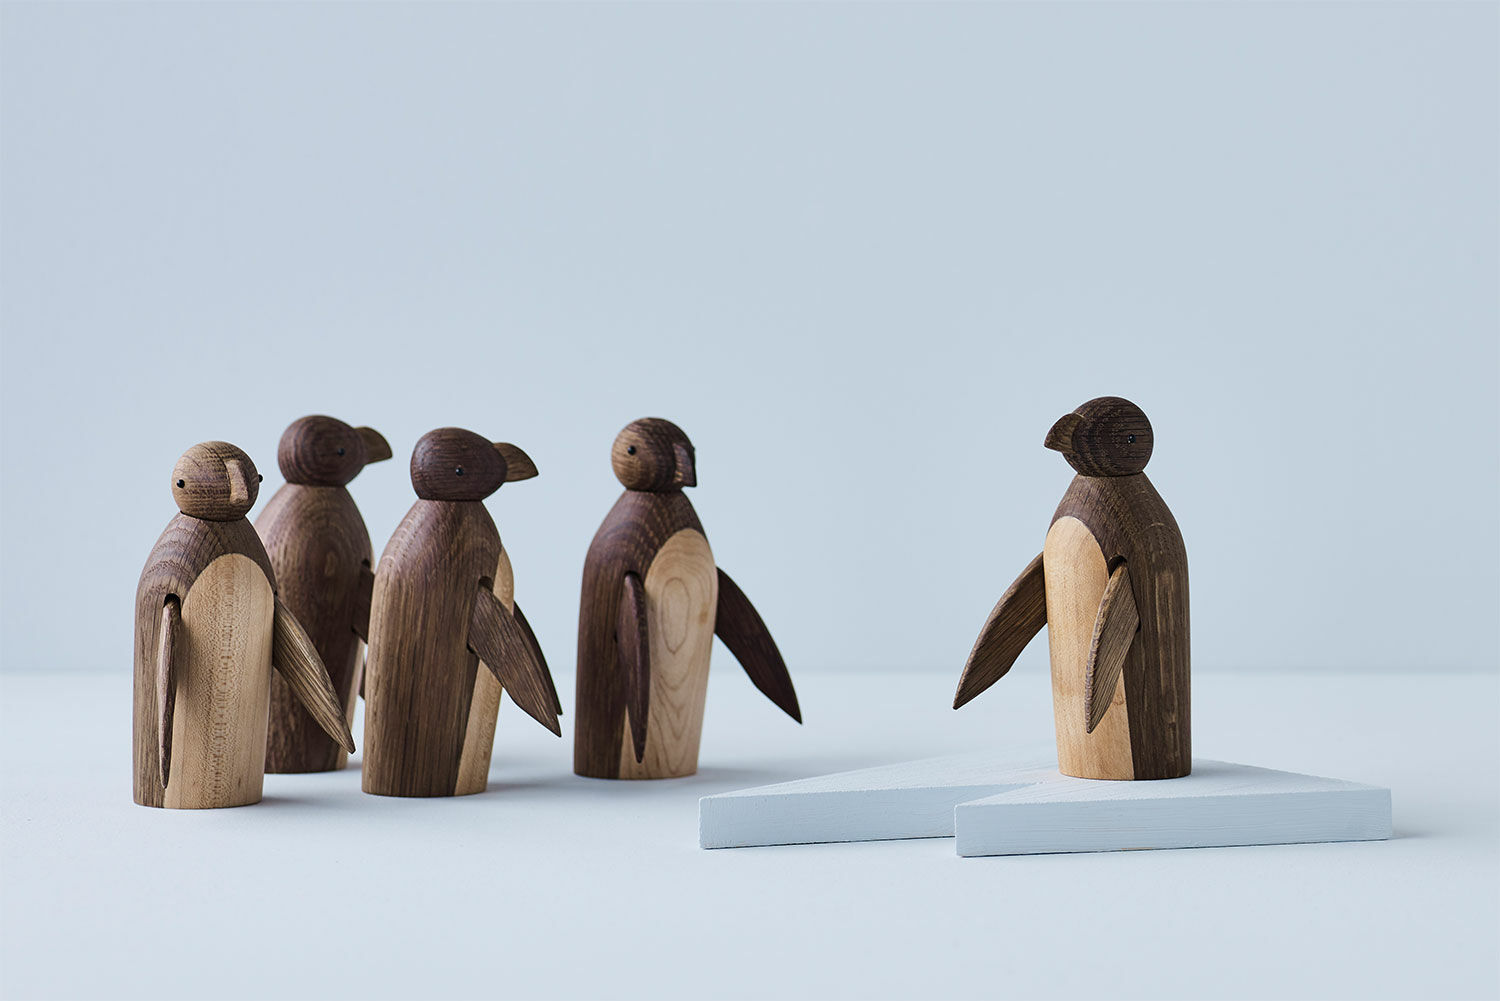 Holzfigur "Penguin" von Lucie Kaas Design